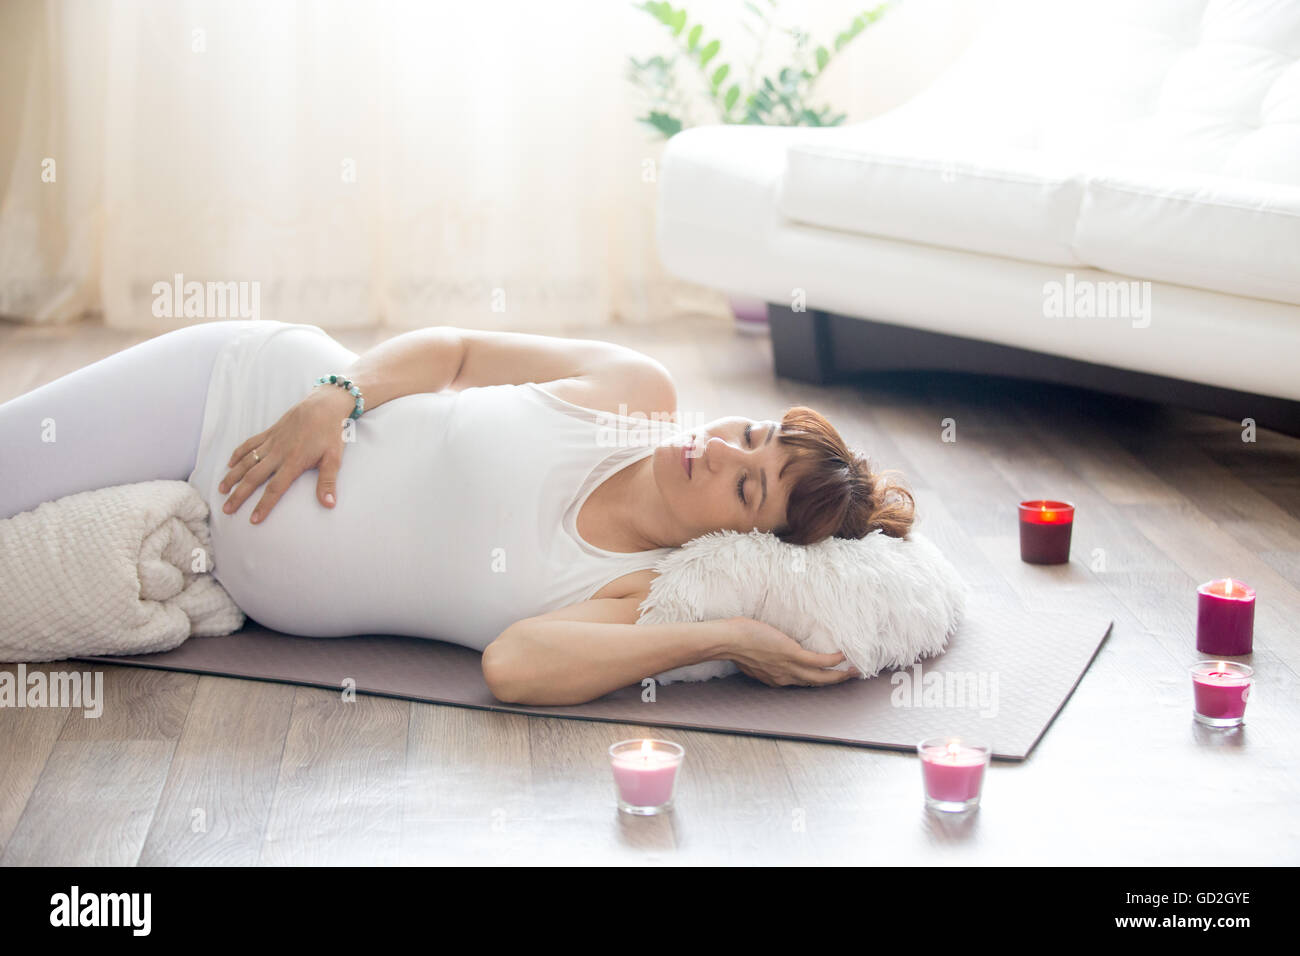 Gesunder Lifestyle-Konzept. Schwangerschaft-Yoga und Fitness. Junge schwangere Yoga Frau ruht nach einem Training im Wohnzimmer Stockfoto